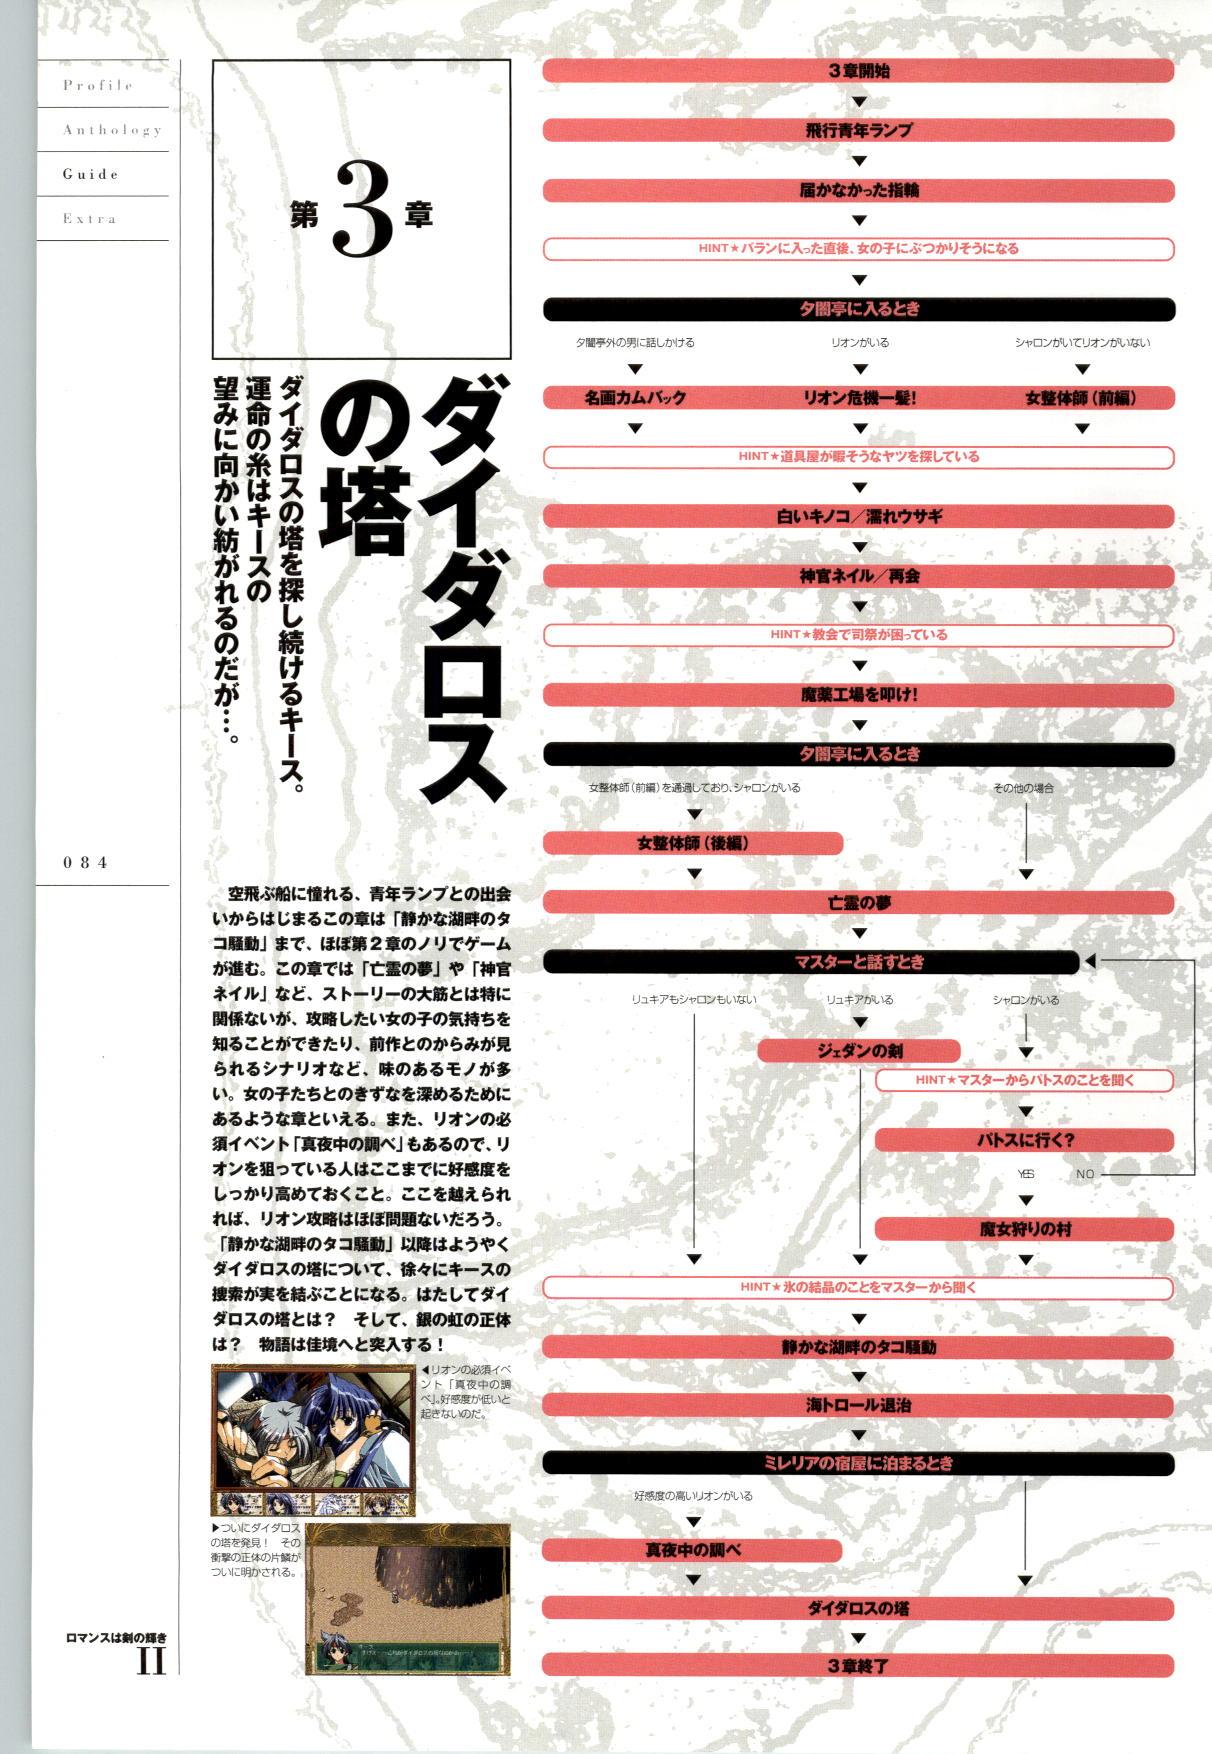 [FAIRYTALE] Romance wa Tsurugi no Kagayaki II - Koushiki Kaido - Emotional Fanbook 84